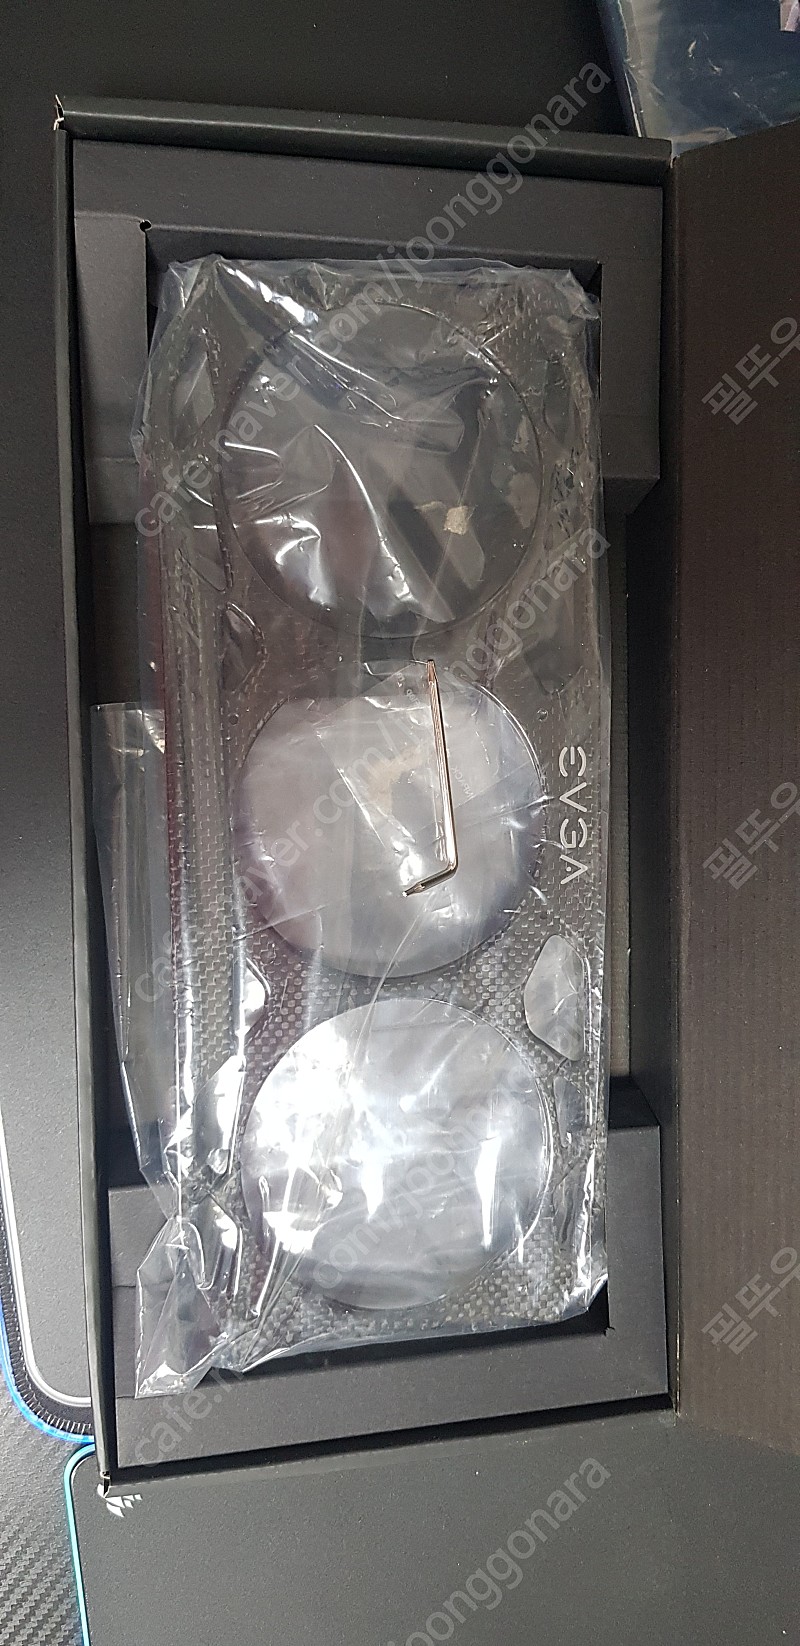 EVGA 2070 슈퍼 FTW3 카본 악세사리 킷 판매합니다. (그래픽카드 악세사리 제품)